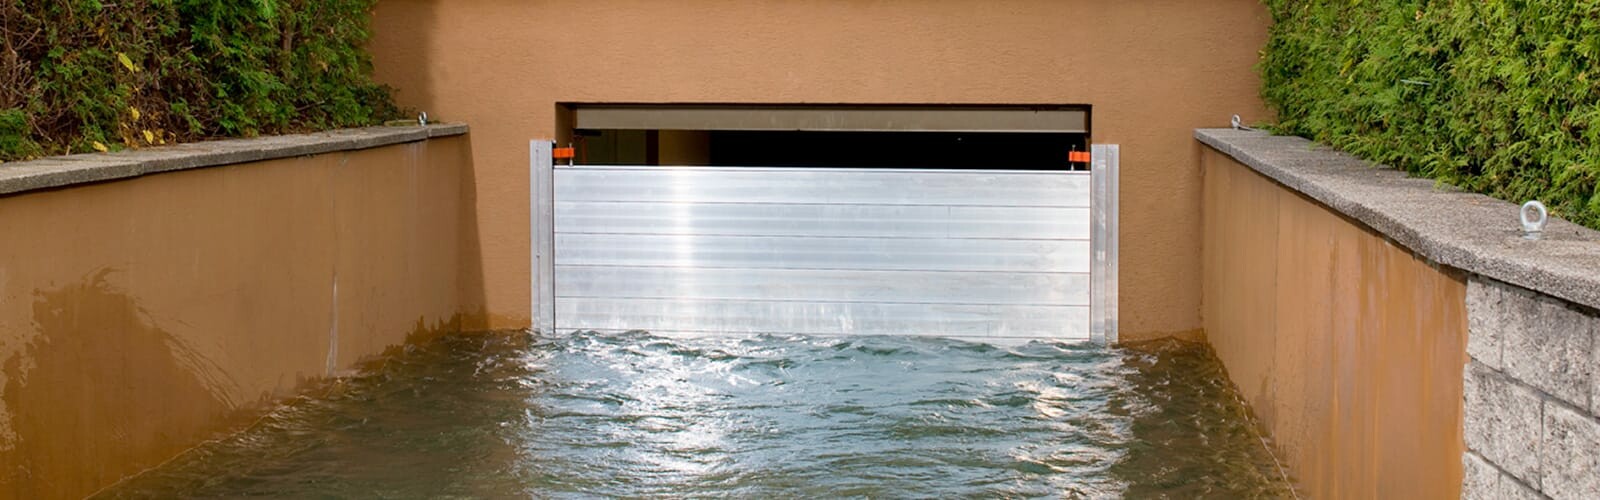 PREFA Hochwasserschutzsystem vor einem Garagentor